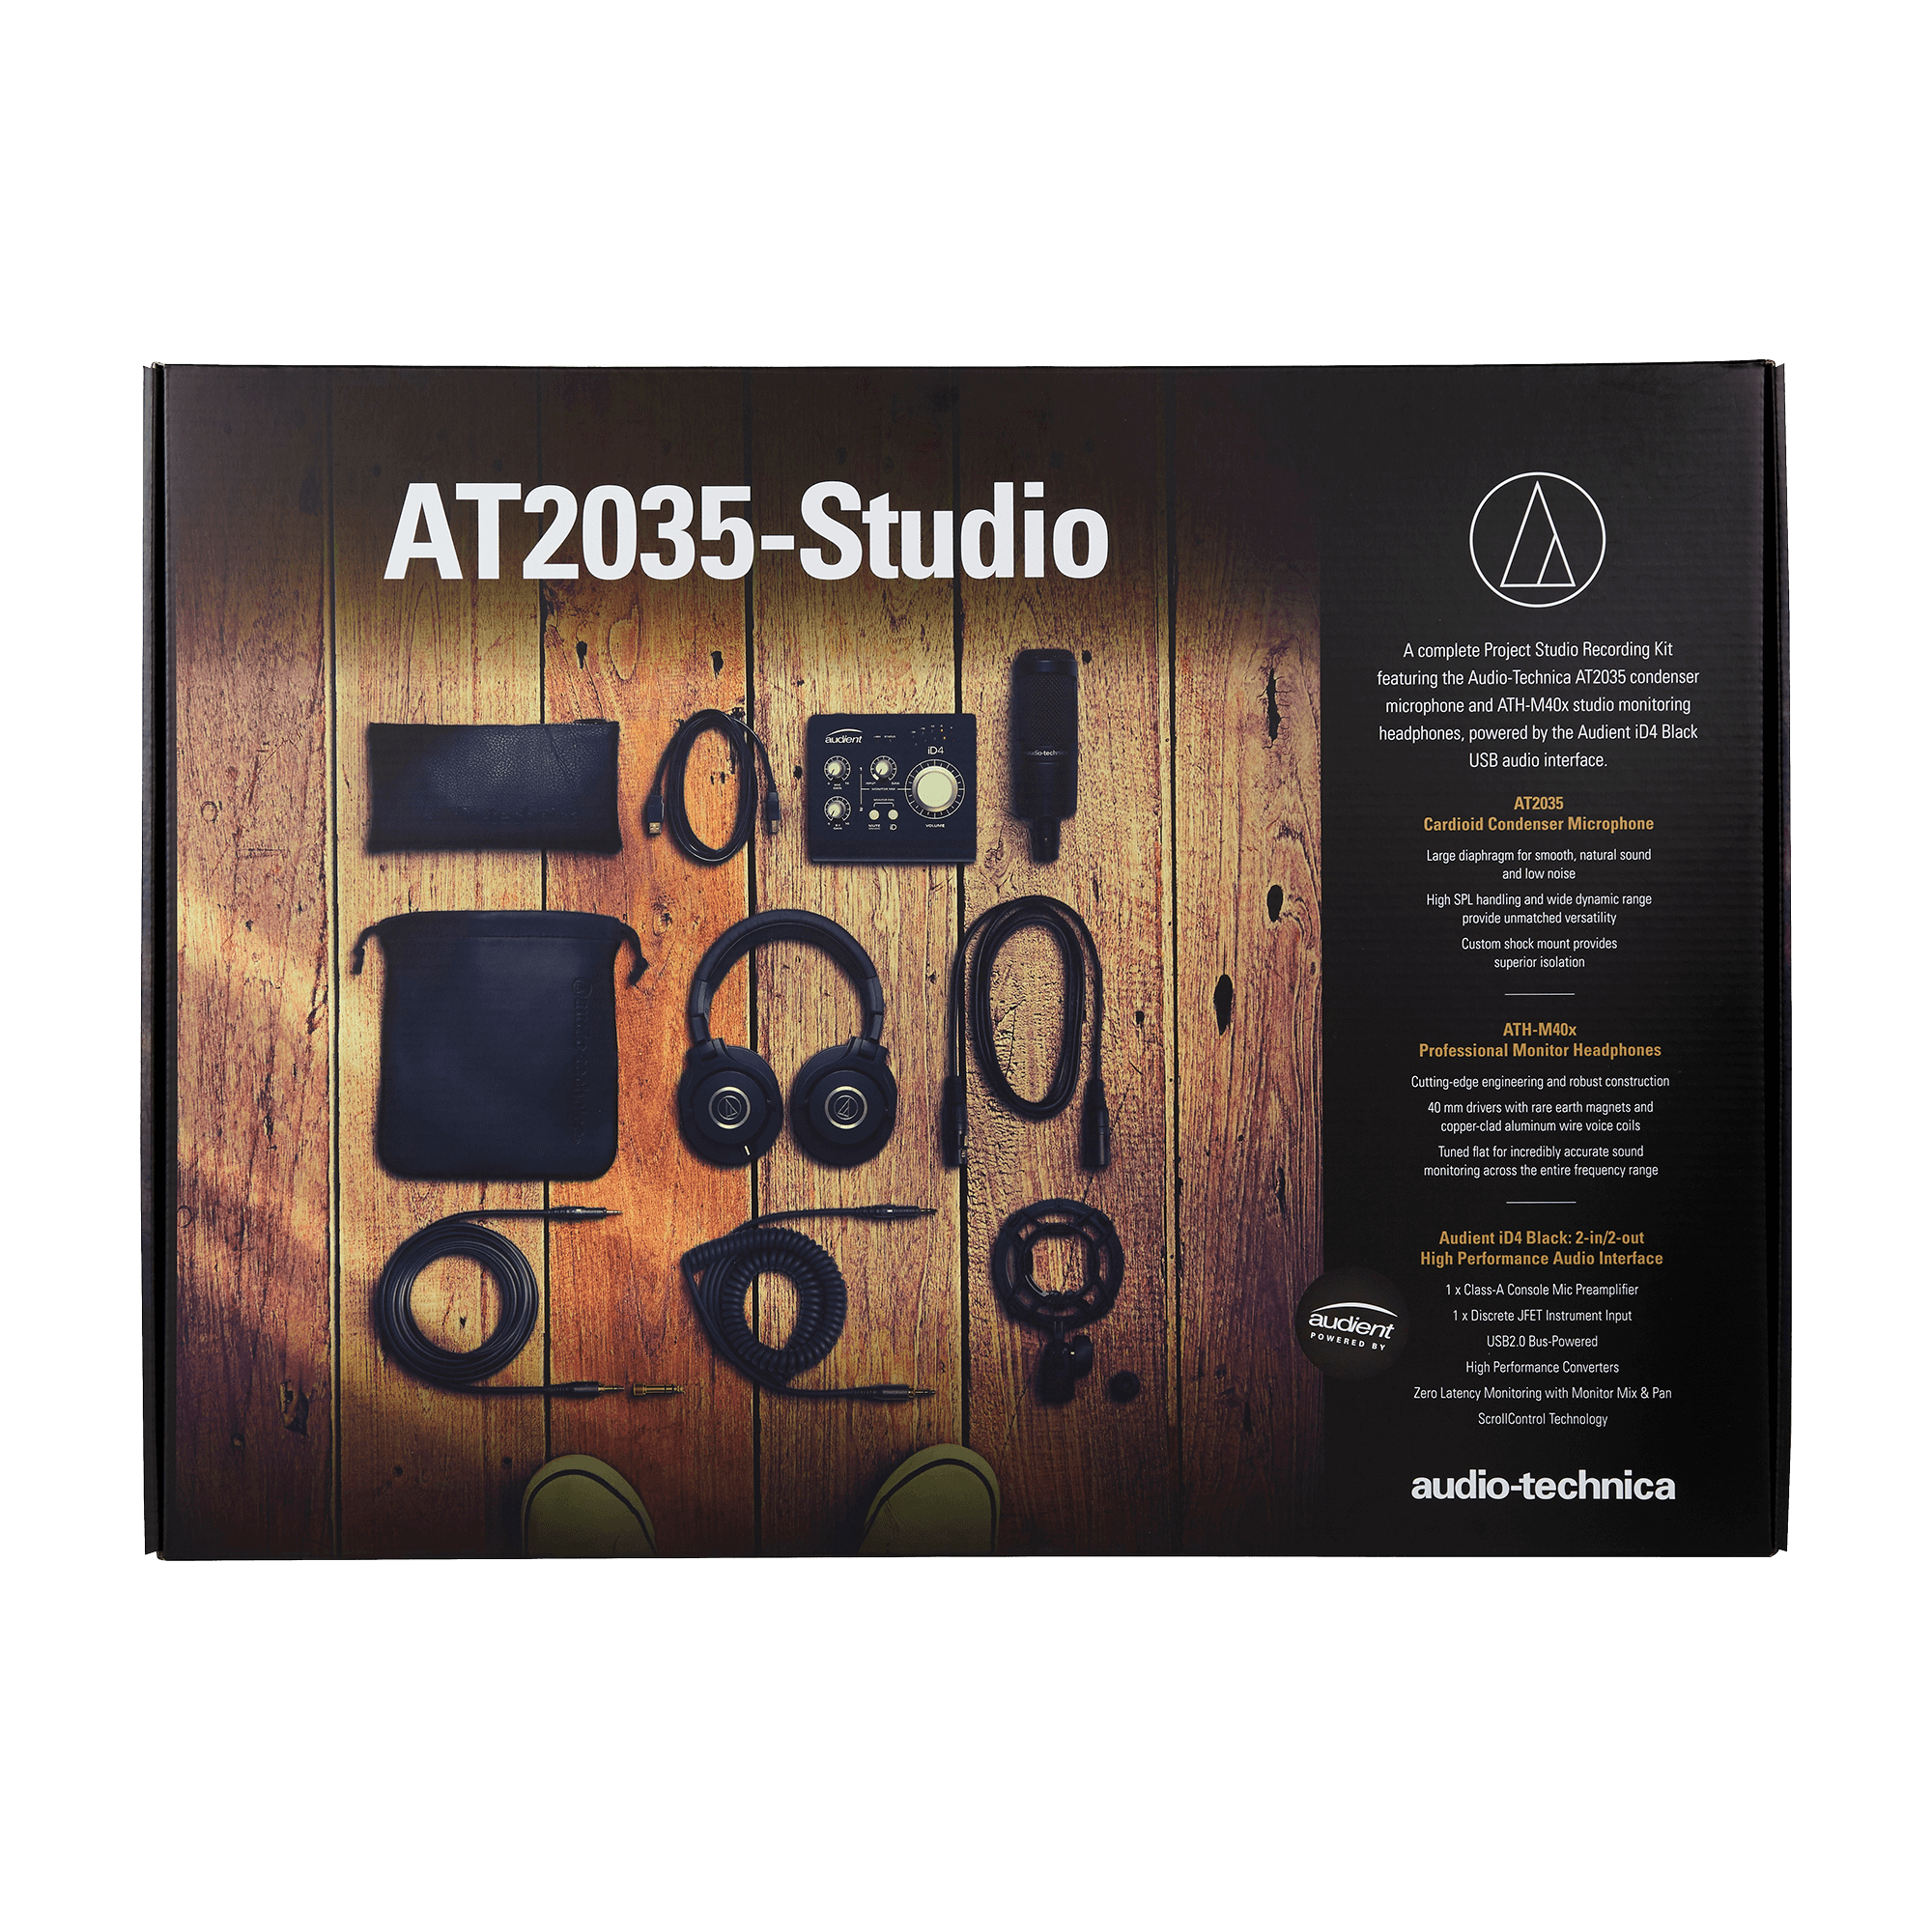 Audio-Technica AT2035-Studio Lensemble project studio ultime prêt à enregistrer